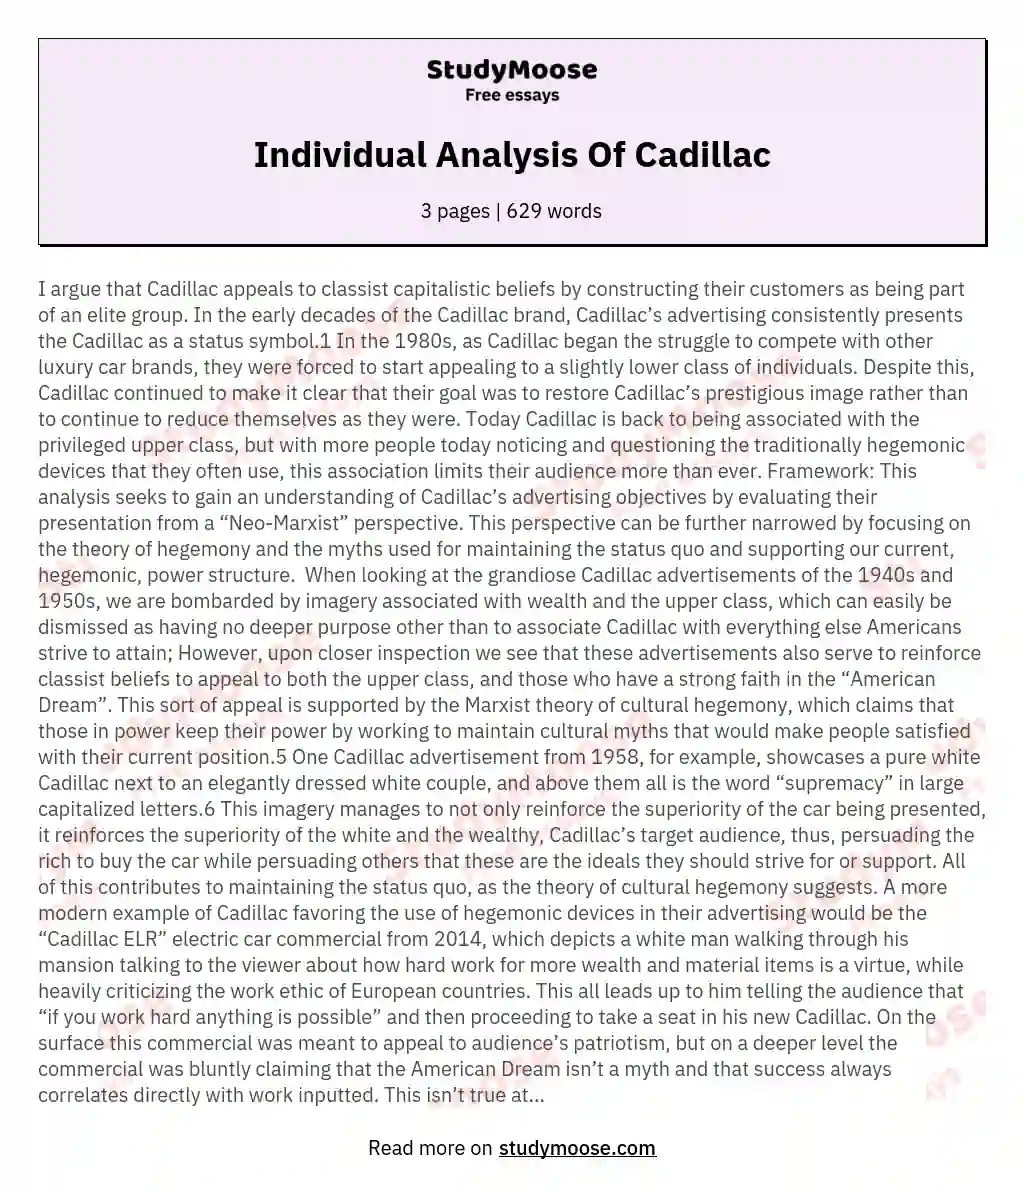 Individual Analysis Of Cadillac essay